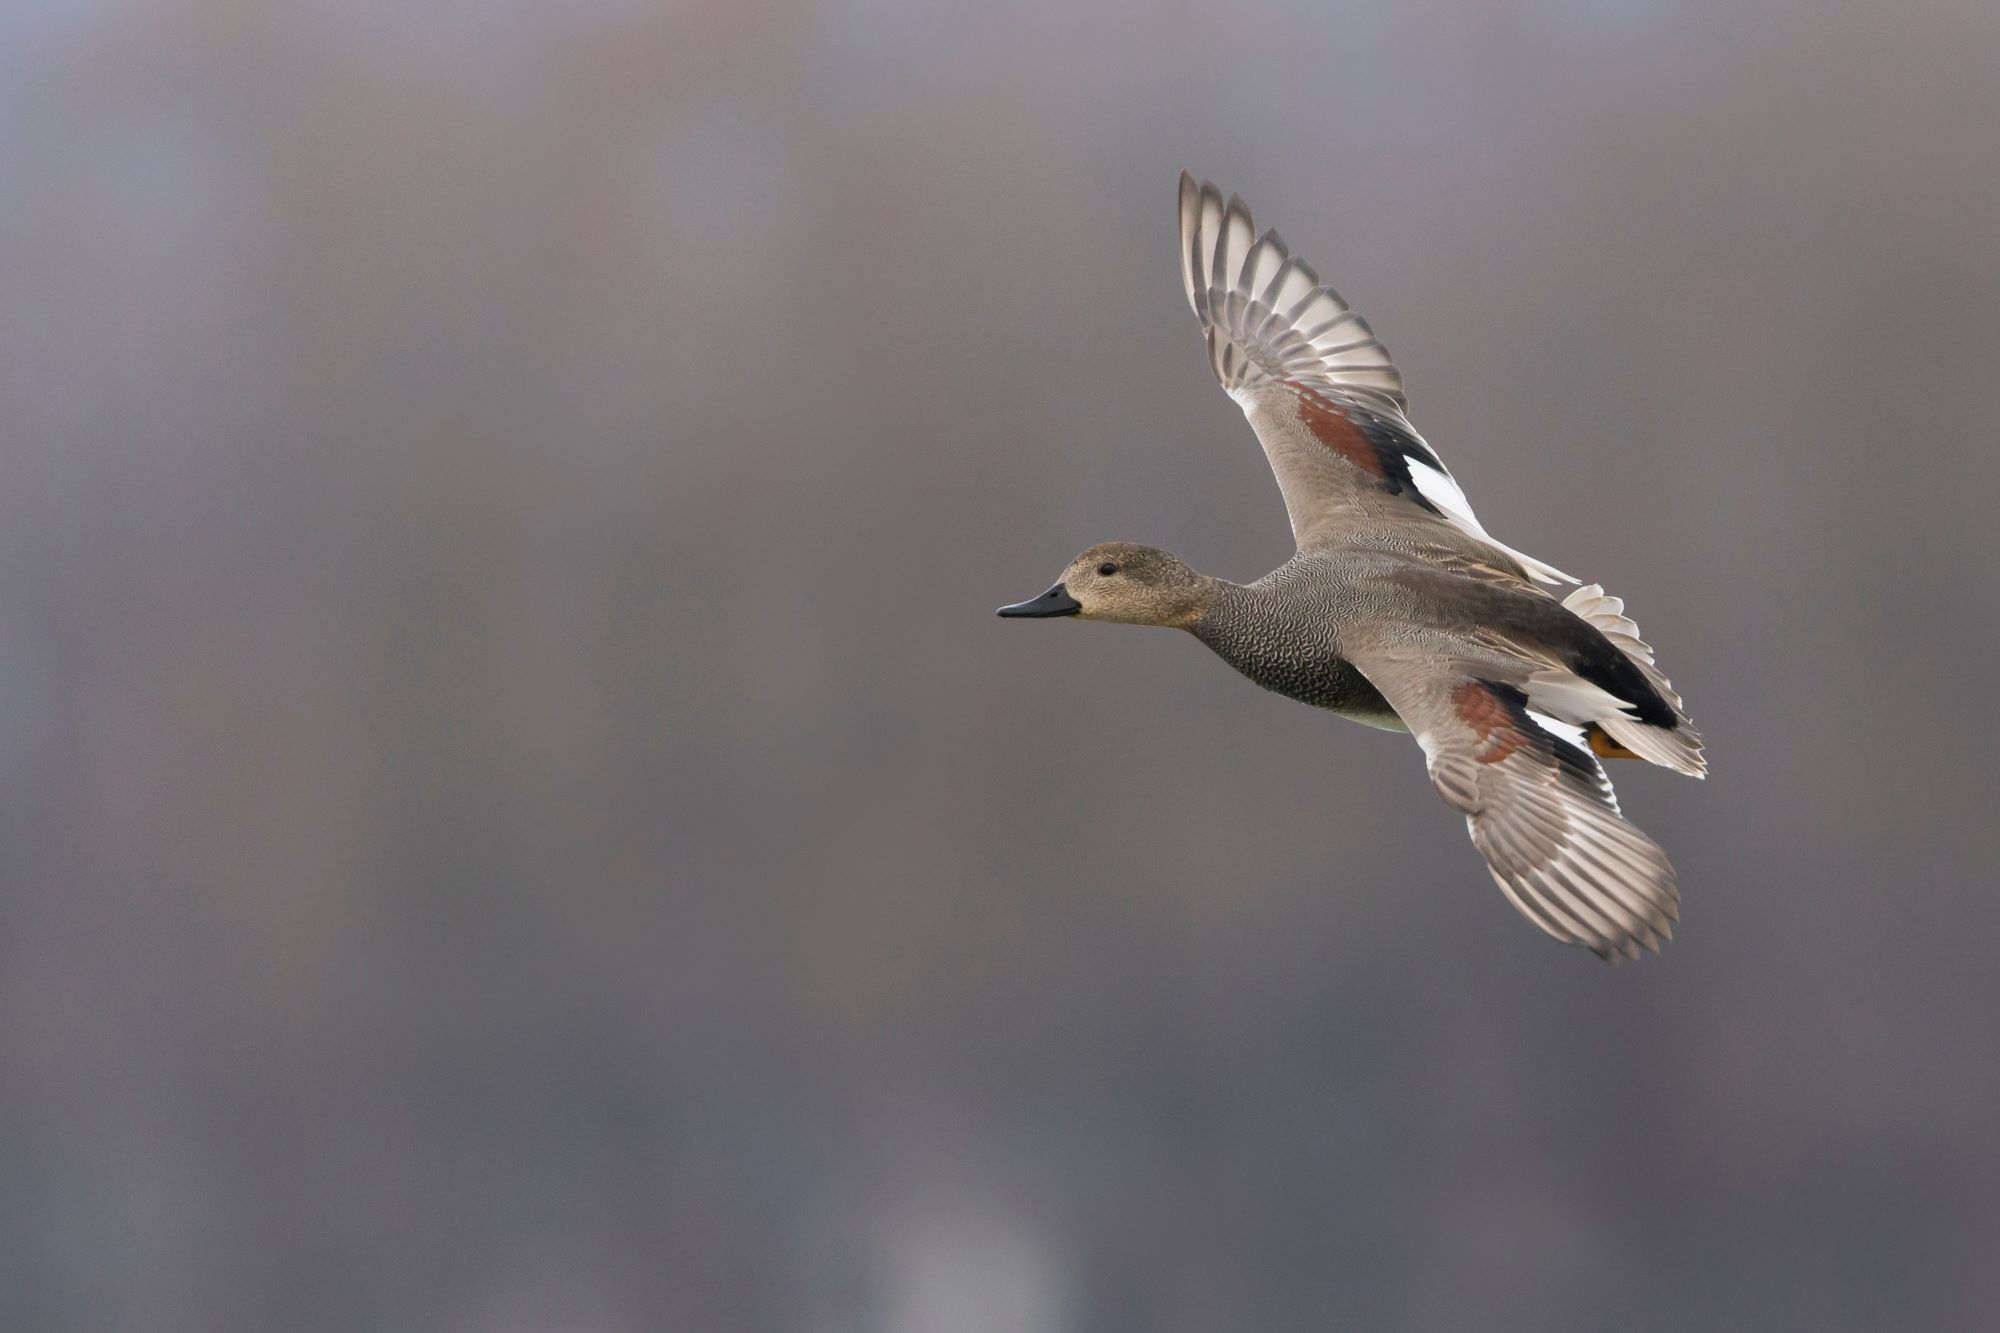 A male Gadwall in flight.